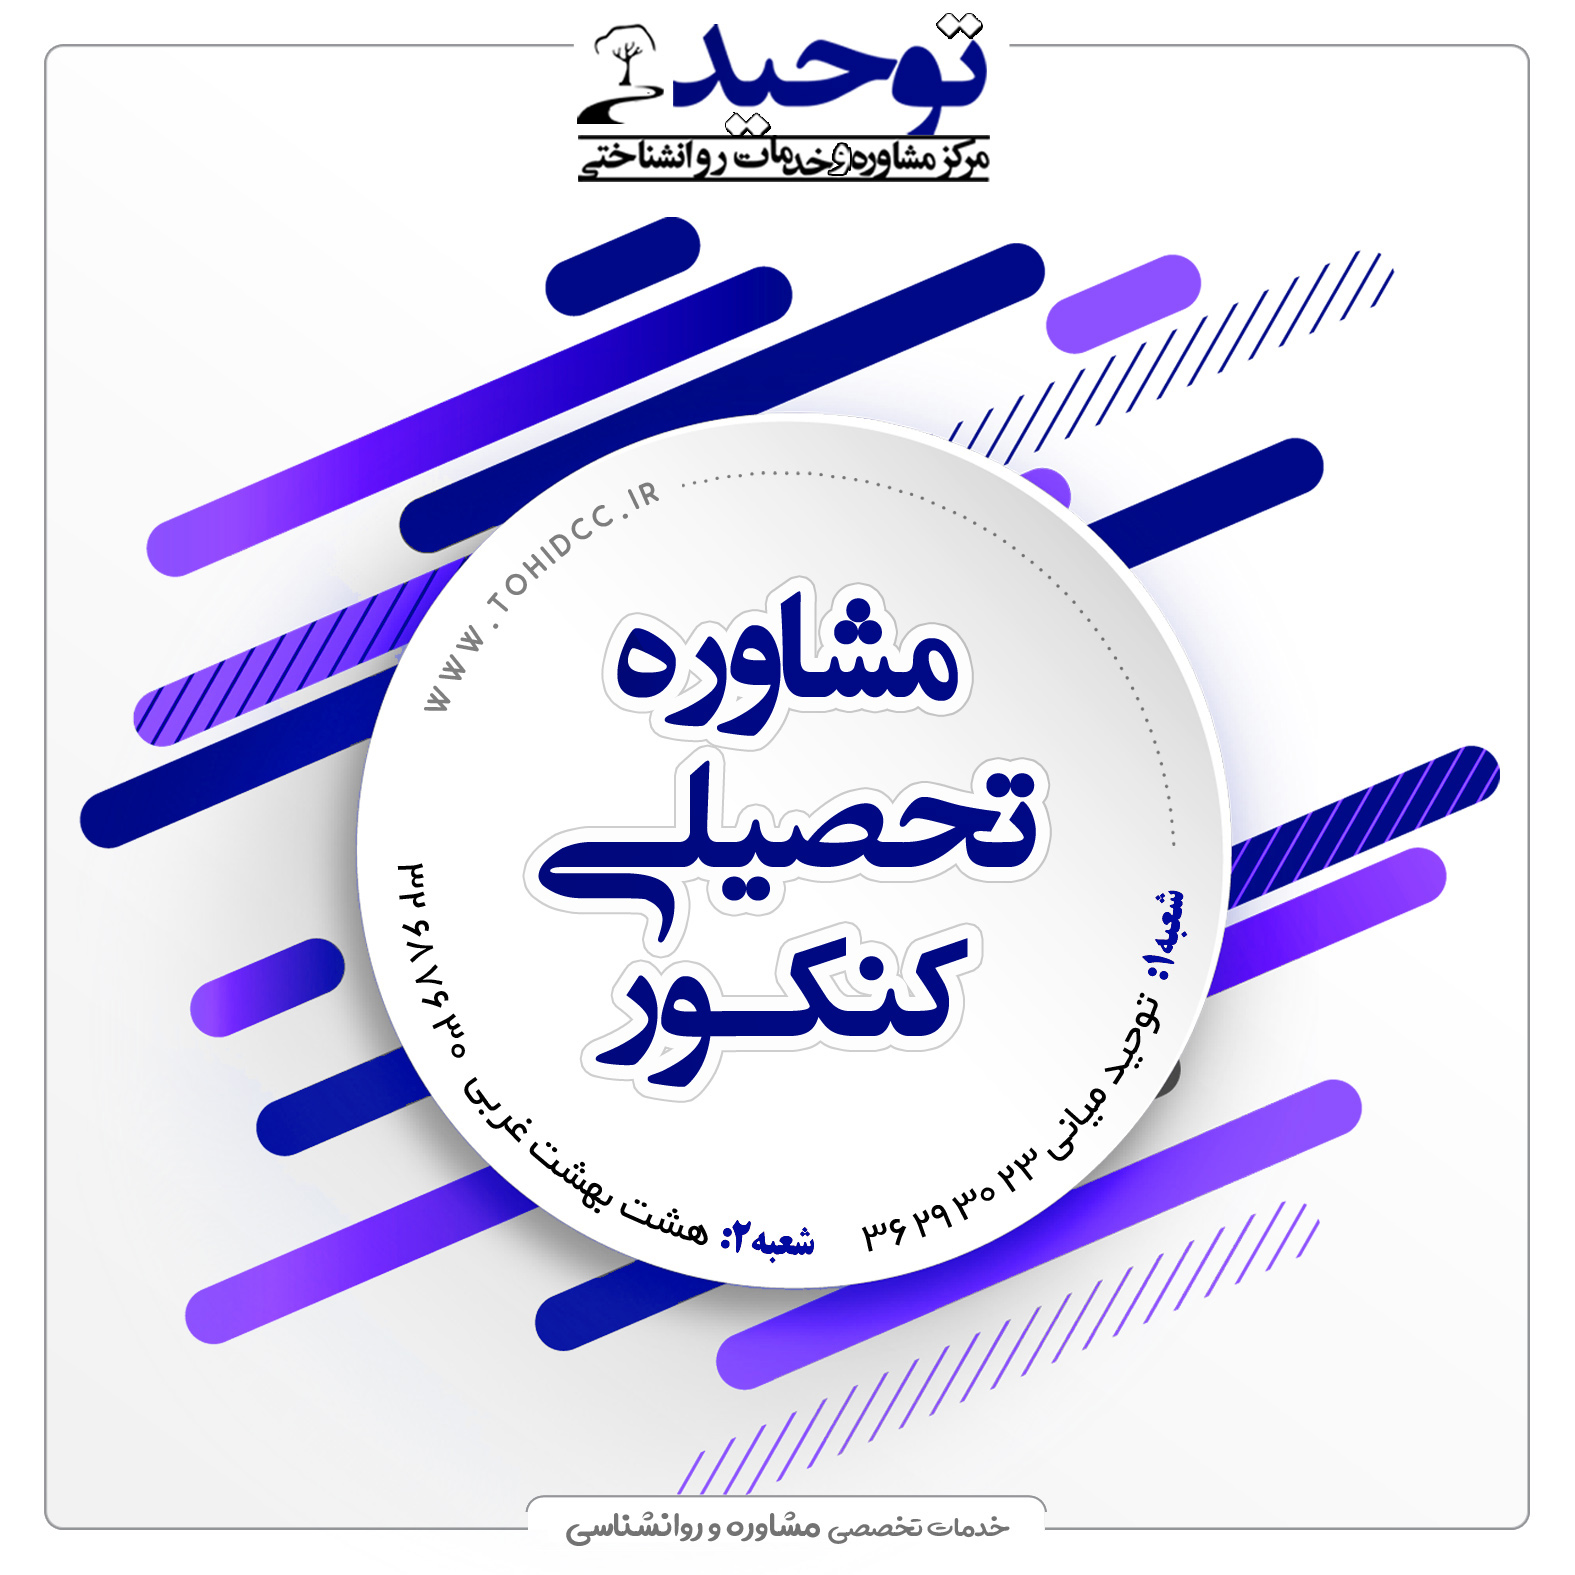 لیست مراکز مشاوره تحصیلی در اصفهان
